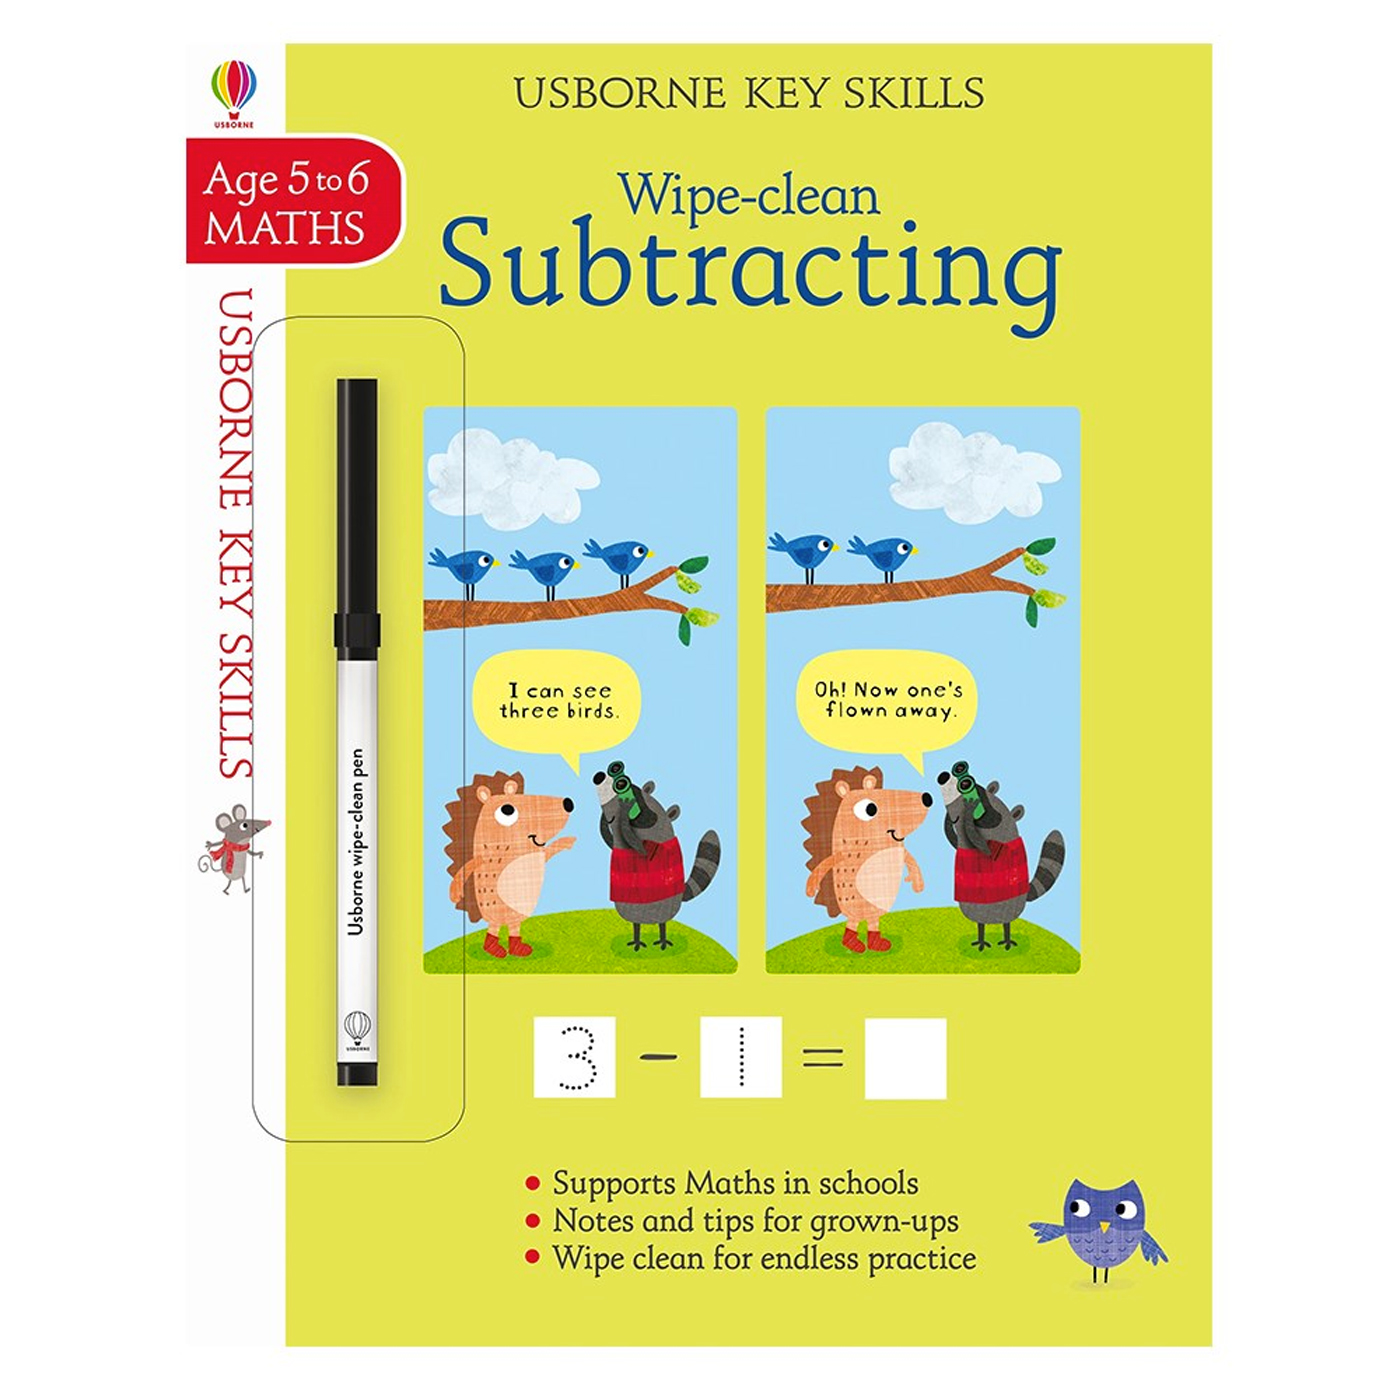  Key Skills Wipe-Clean Subtracting 5-6